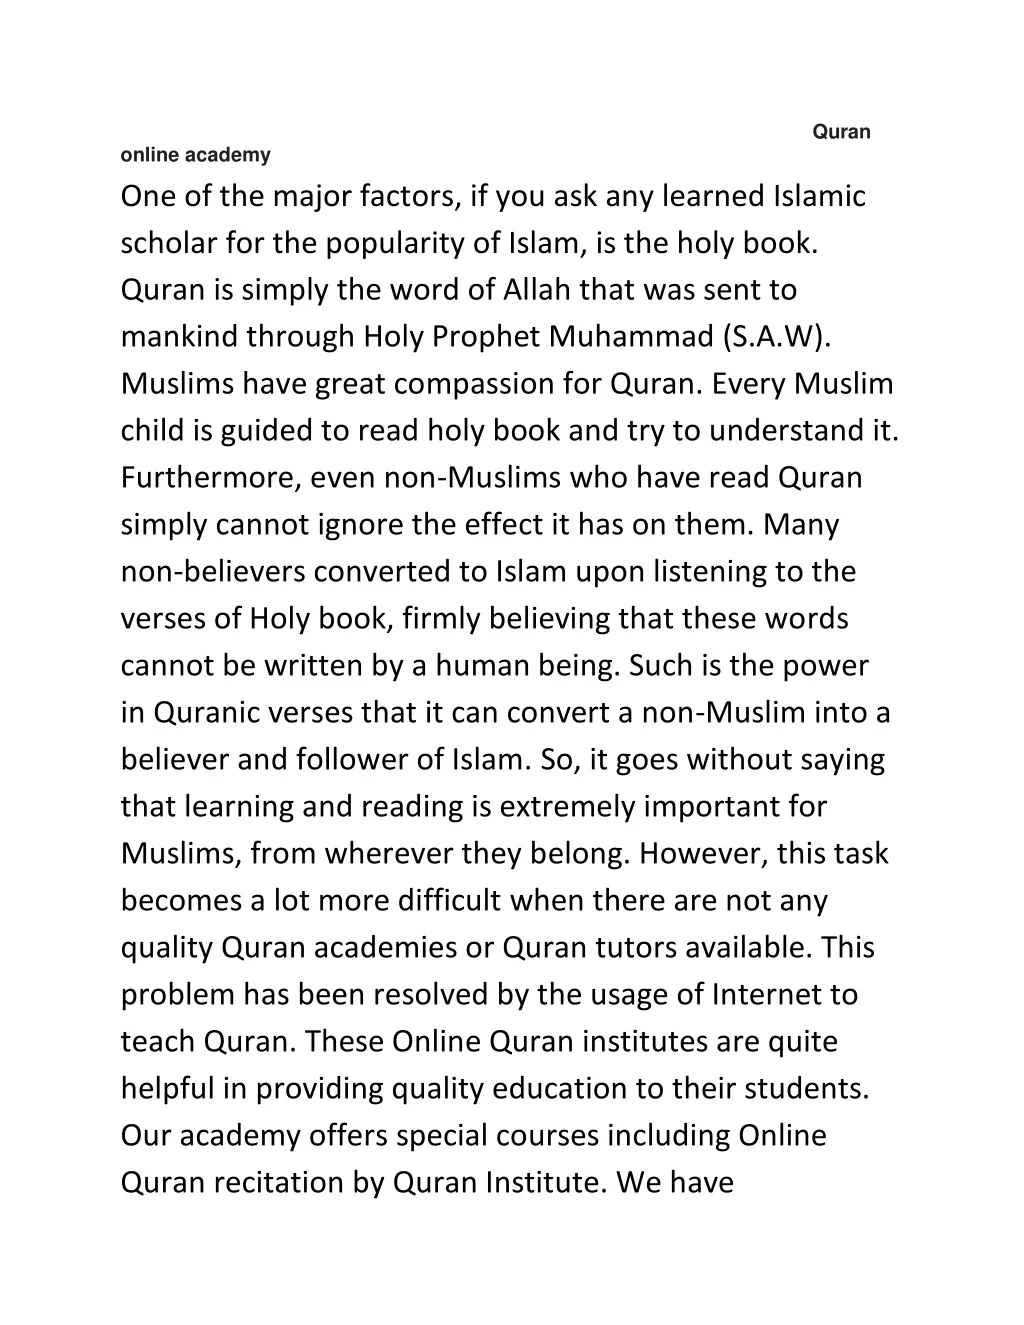 quran online academy one of the major factors